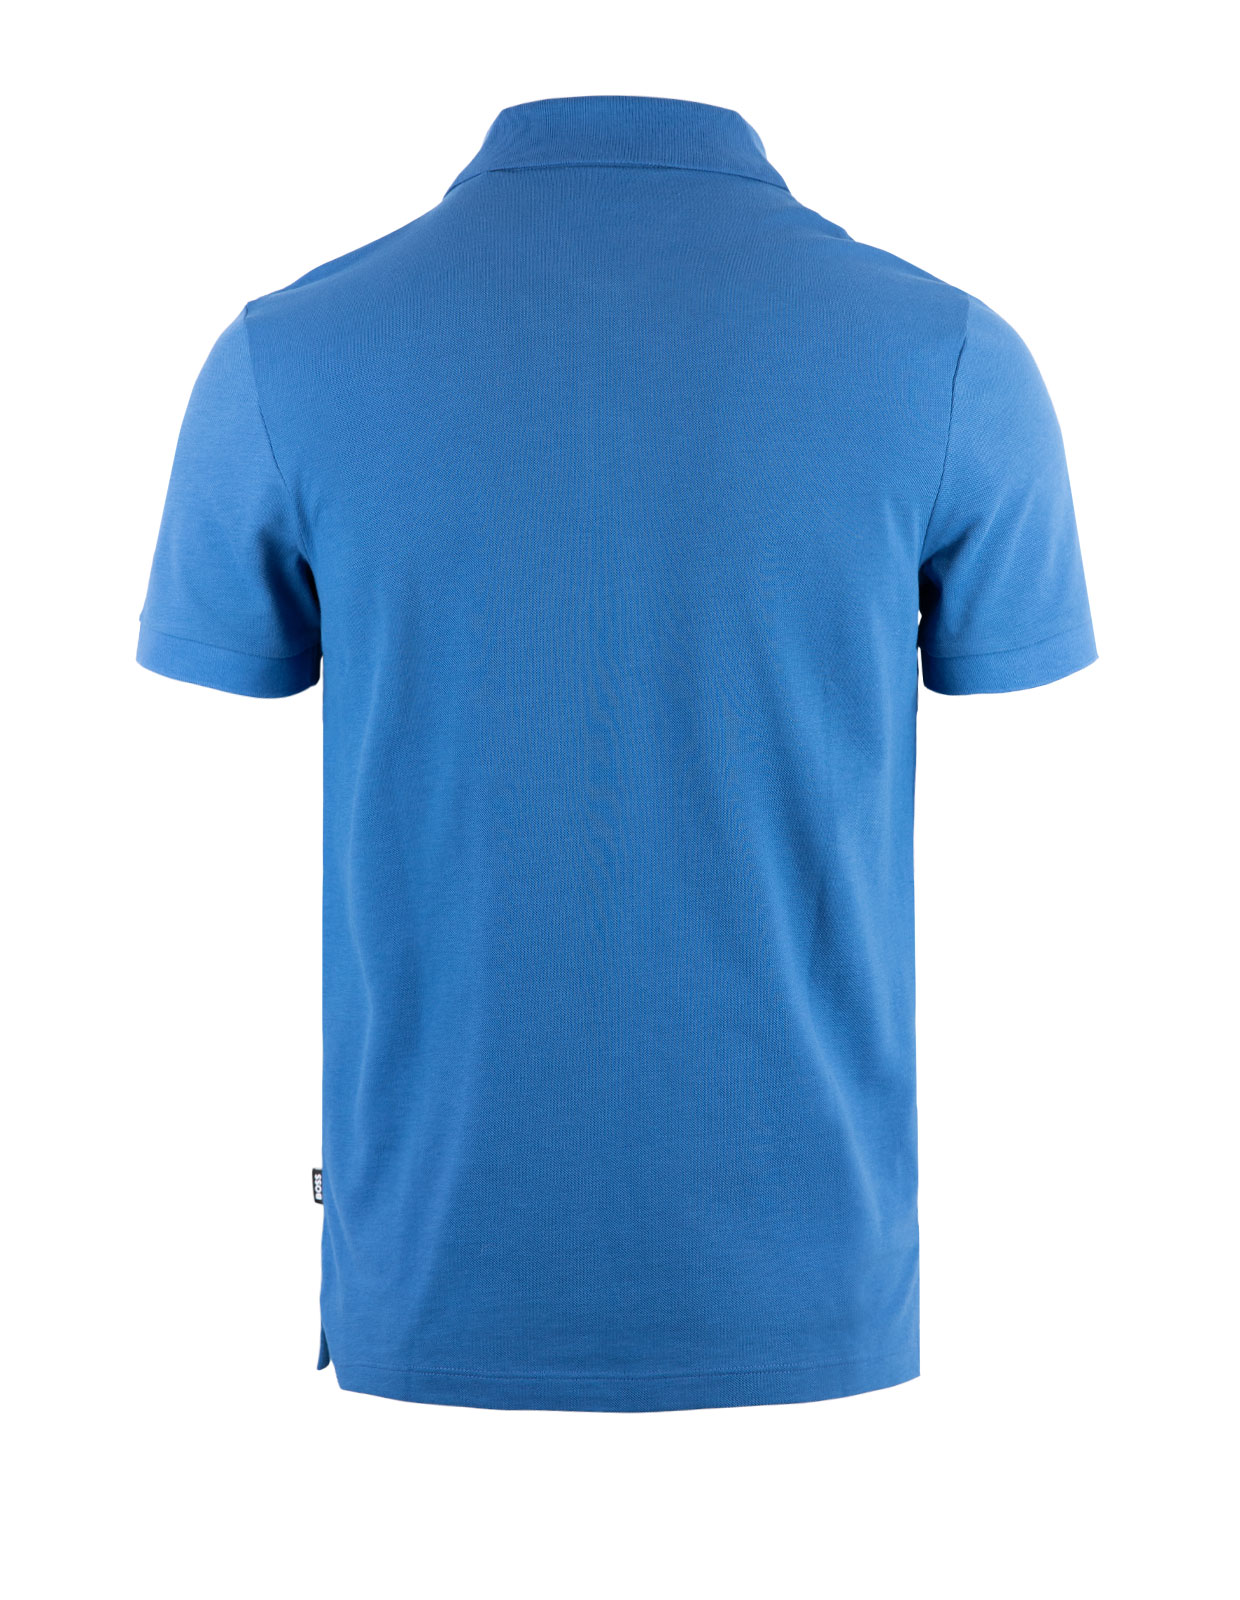 Pallas Polo Shirt Medium Blue